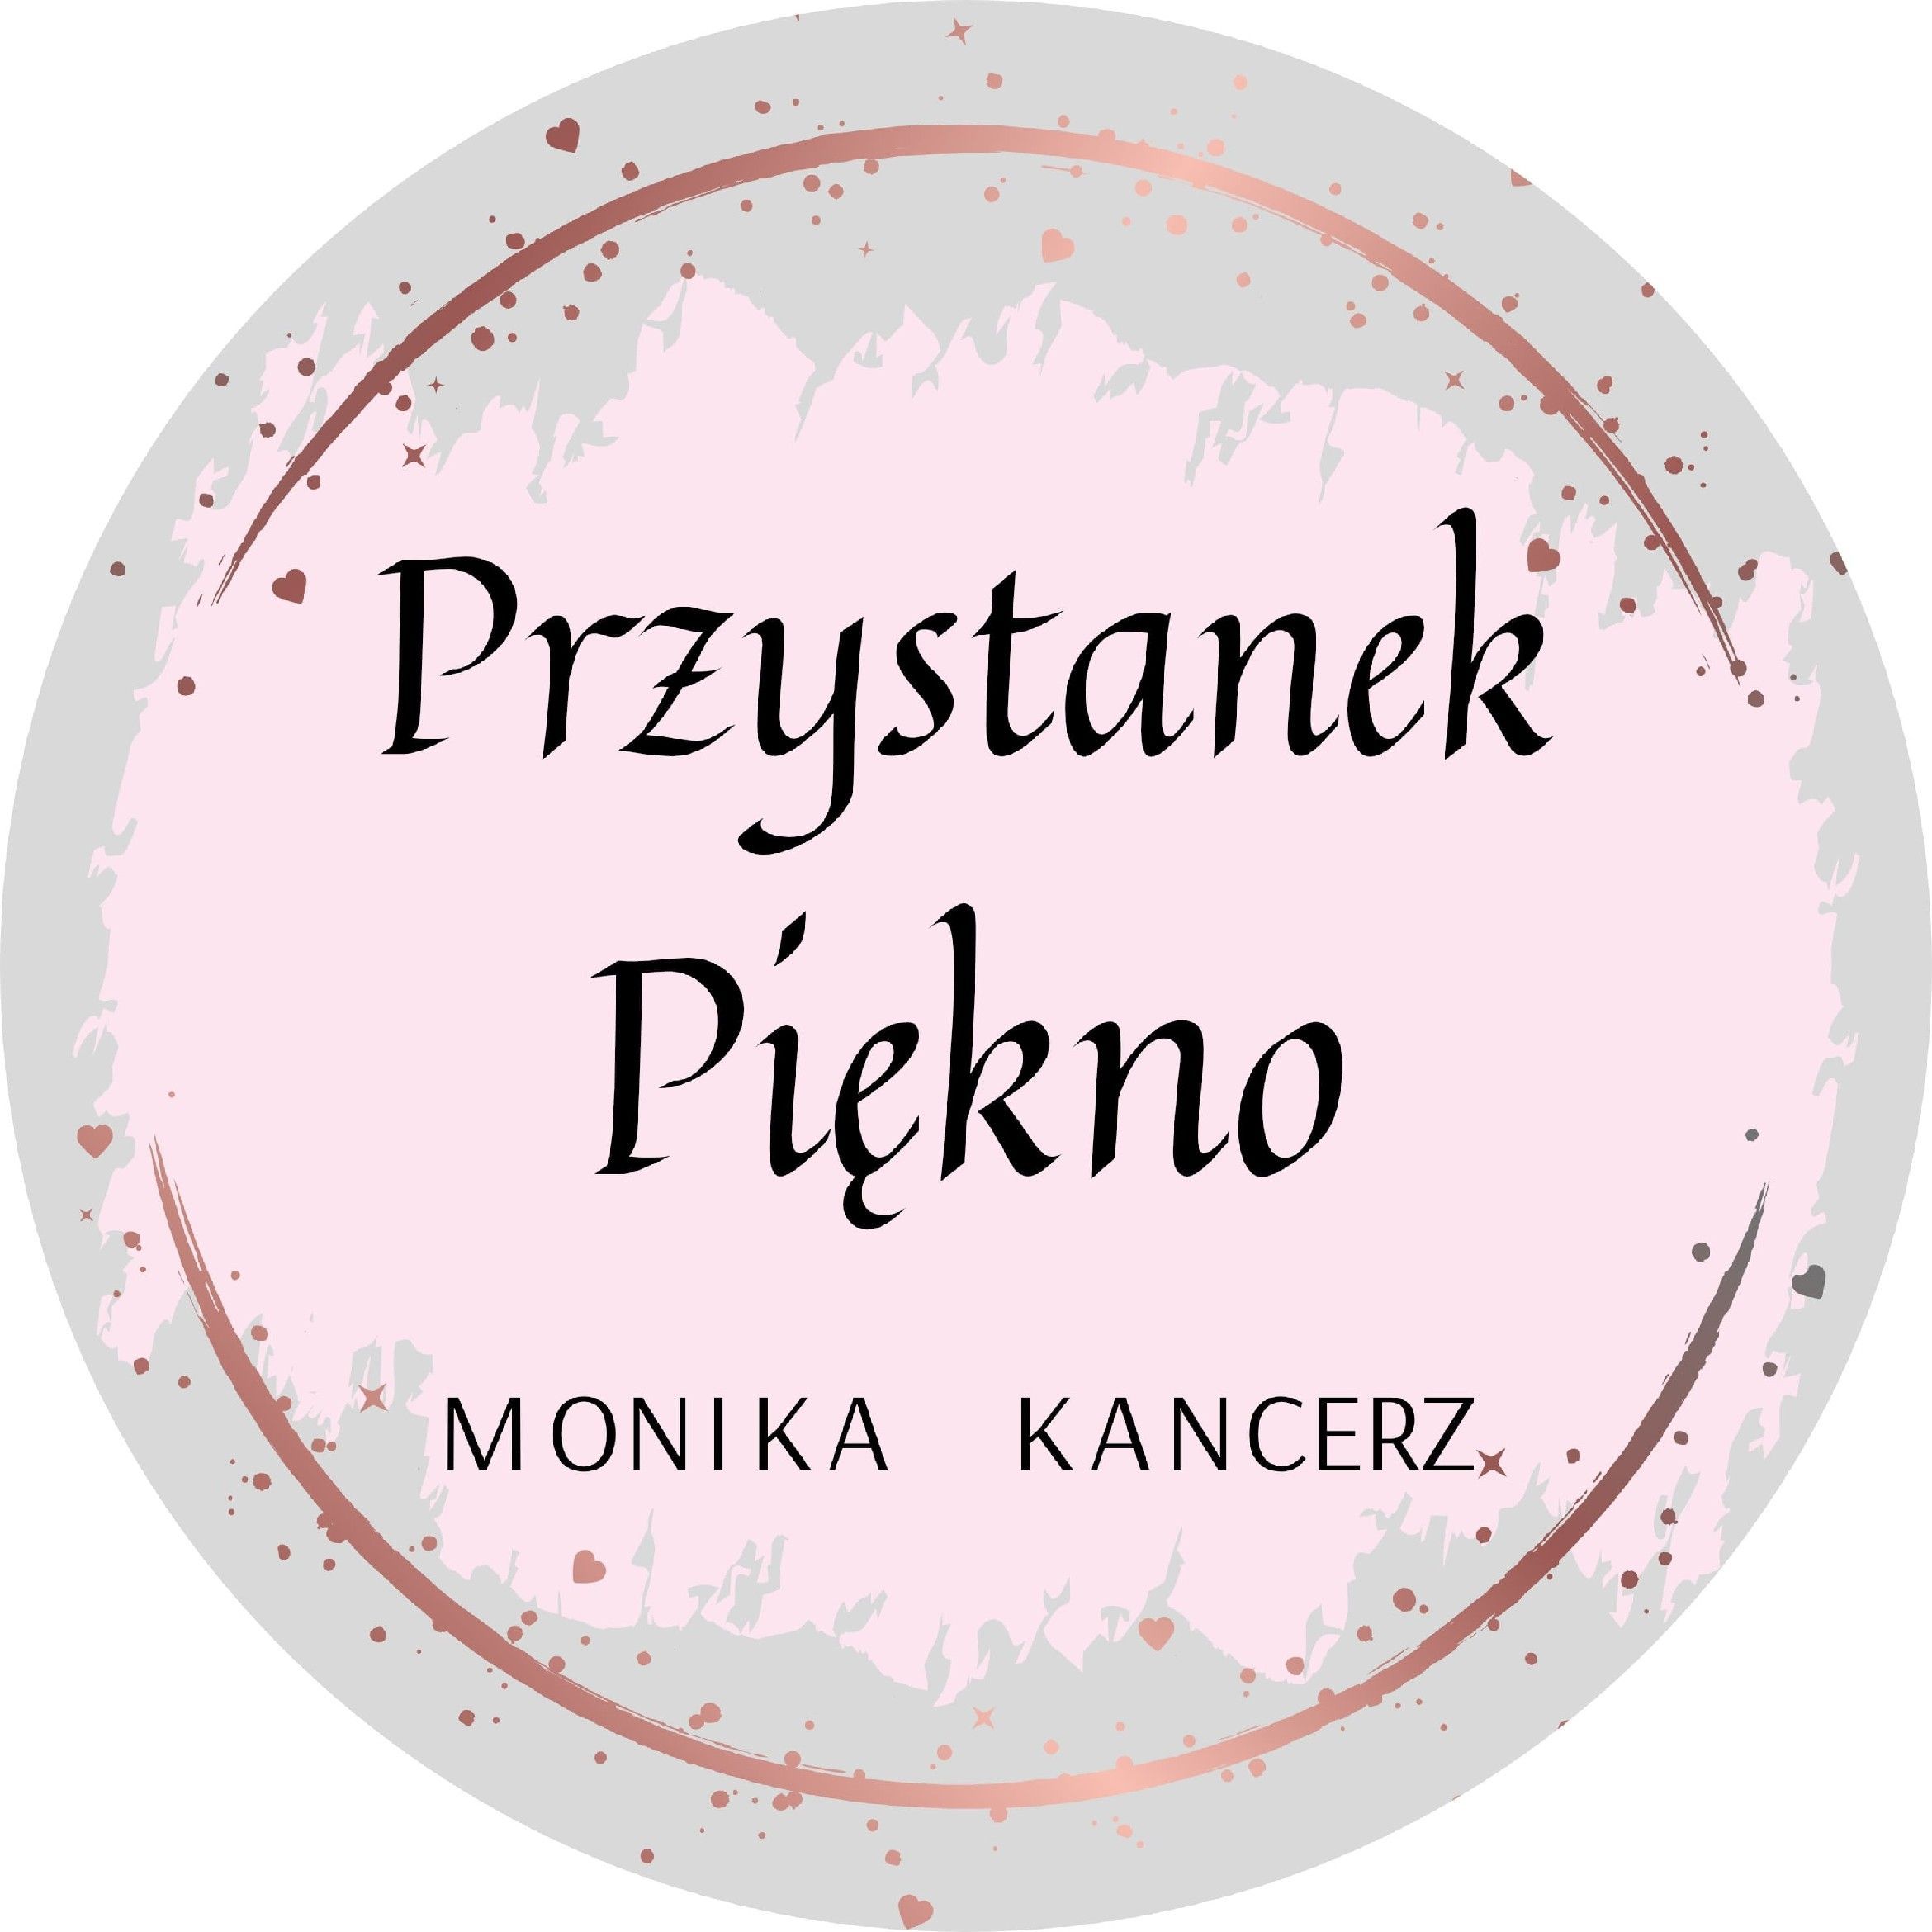 Przystanek Piękno Monika Kancerz, Węgrzce C1, 17A, 32-086, Zielonki